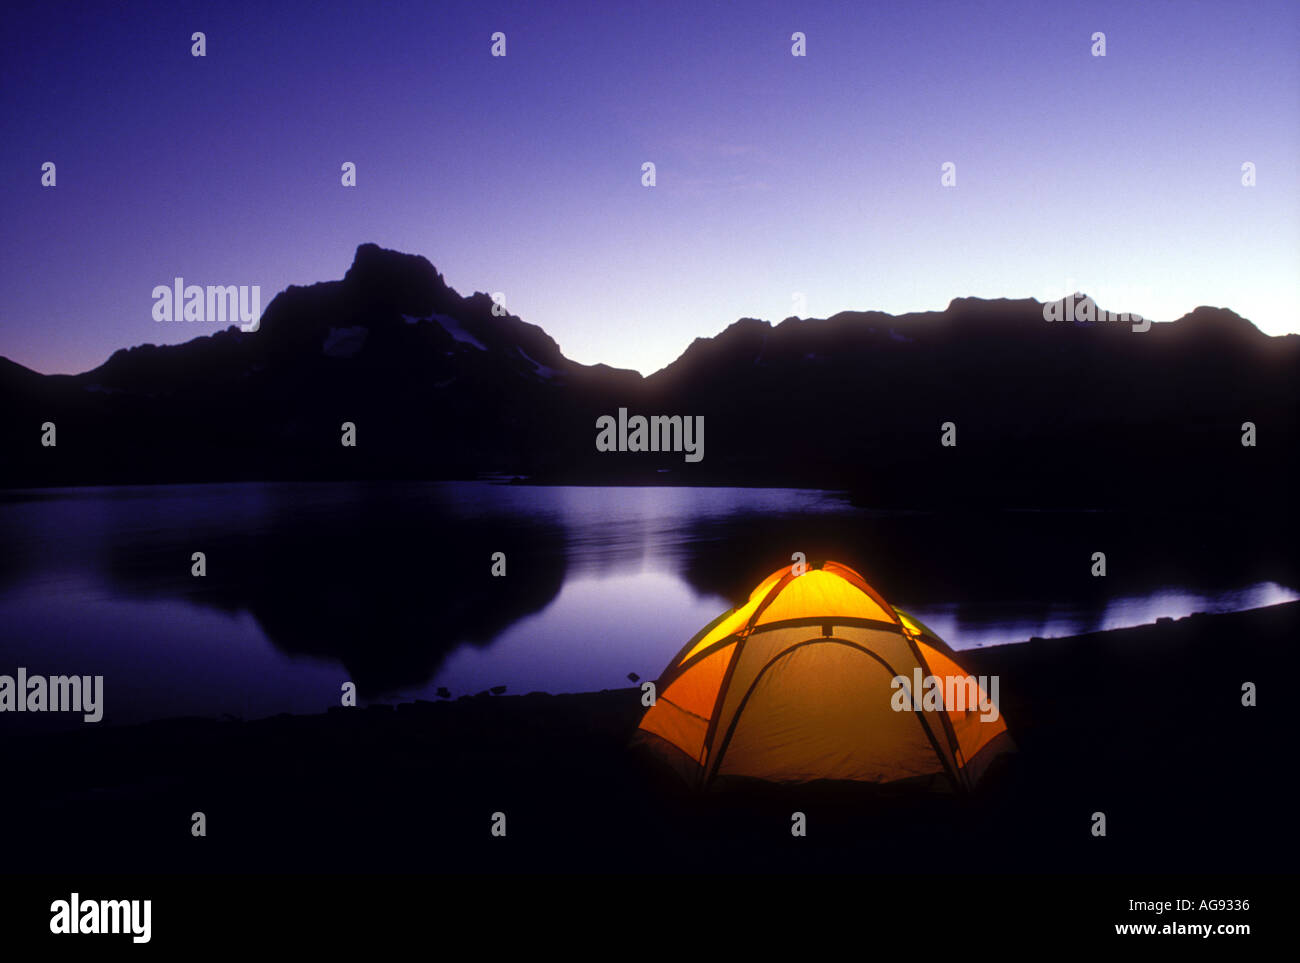 Camping Zelt neben tausend Insel Lake in der Sierra Nevada Berge Kalifornien Eigenschaft veröffentlichte Bild Stockfoto